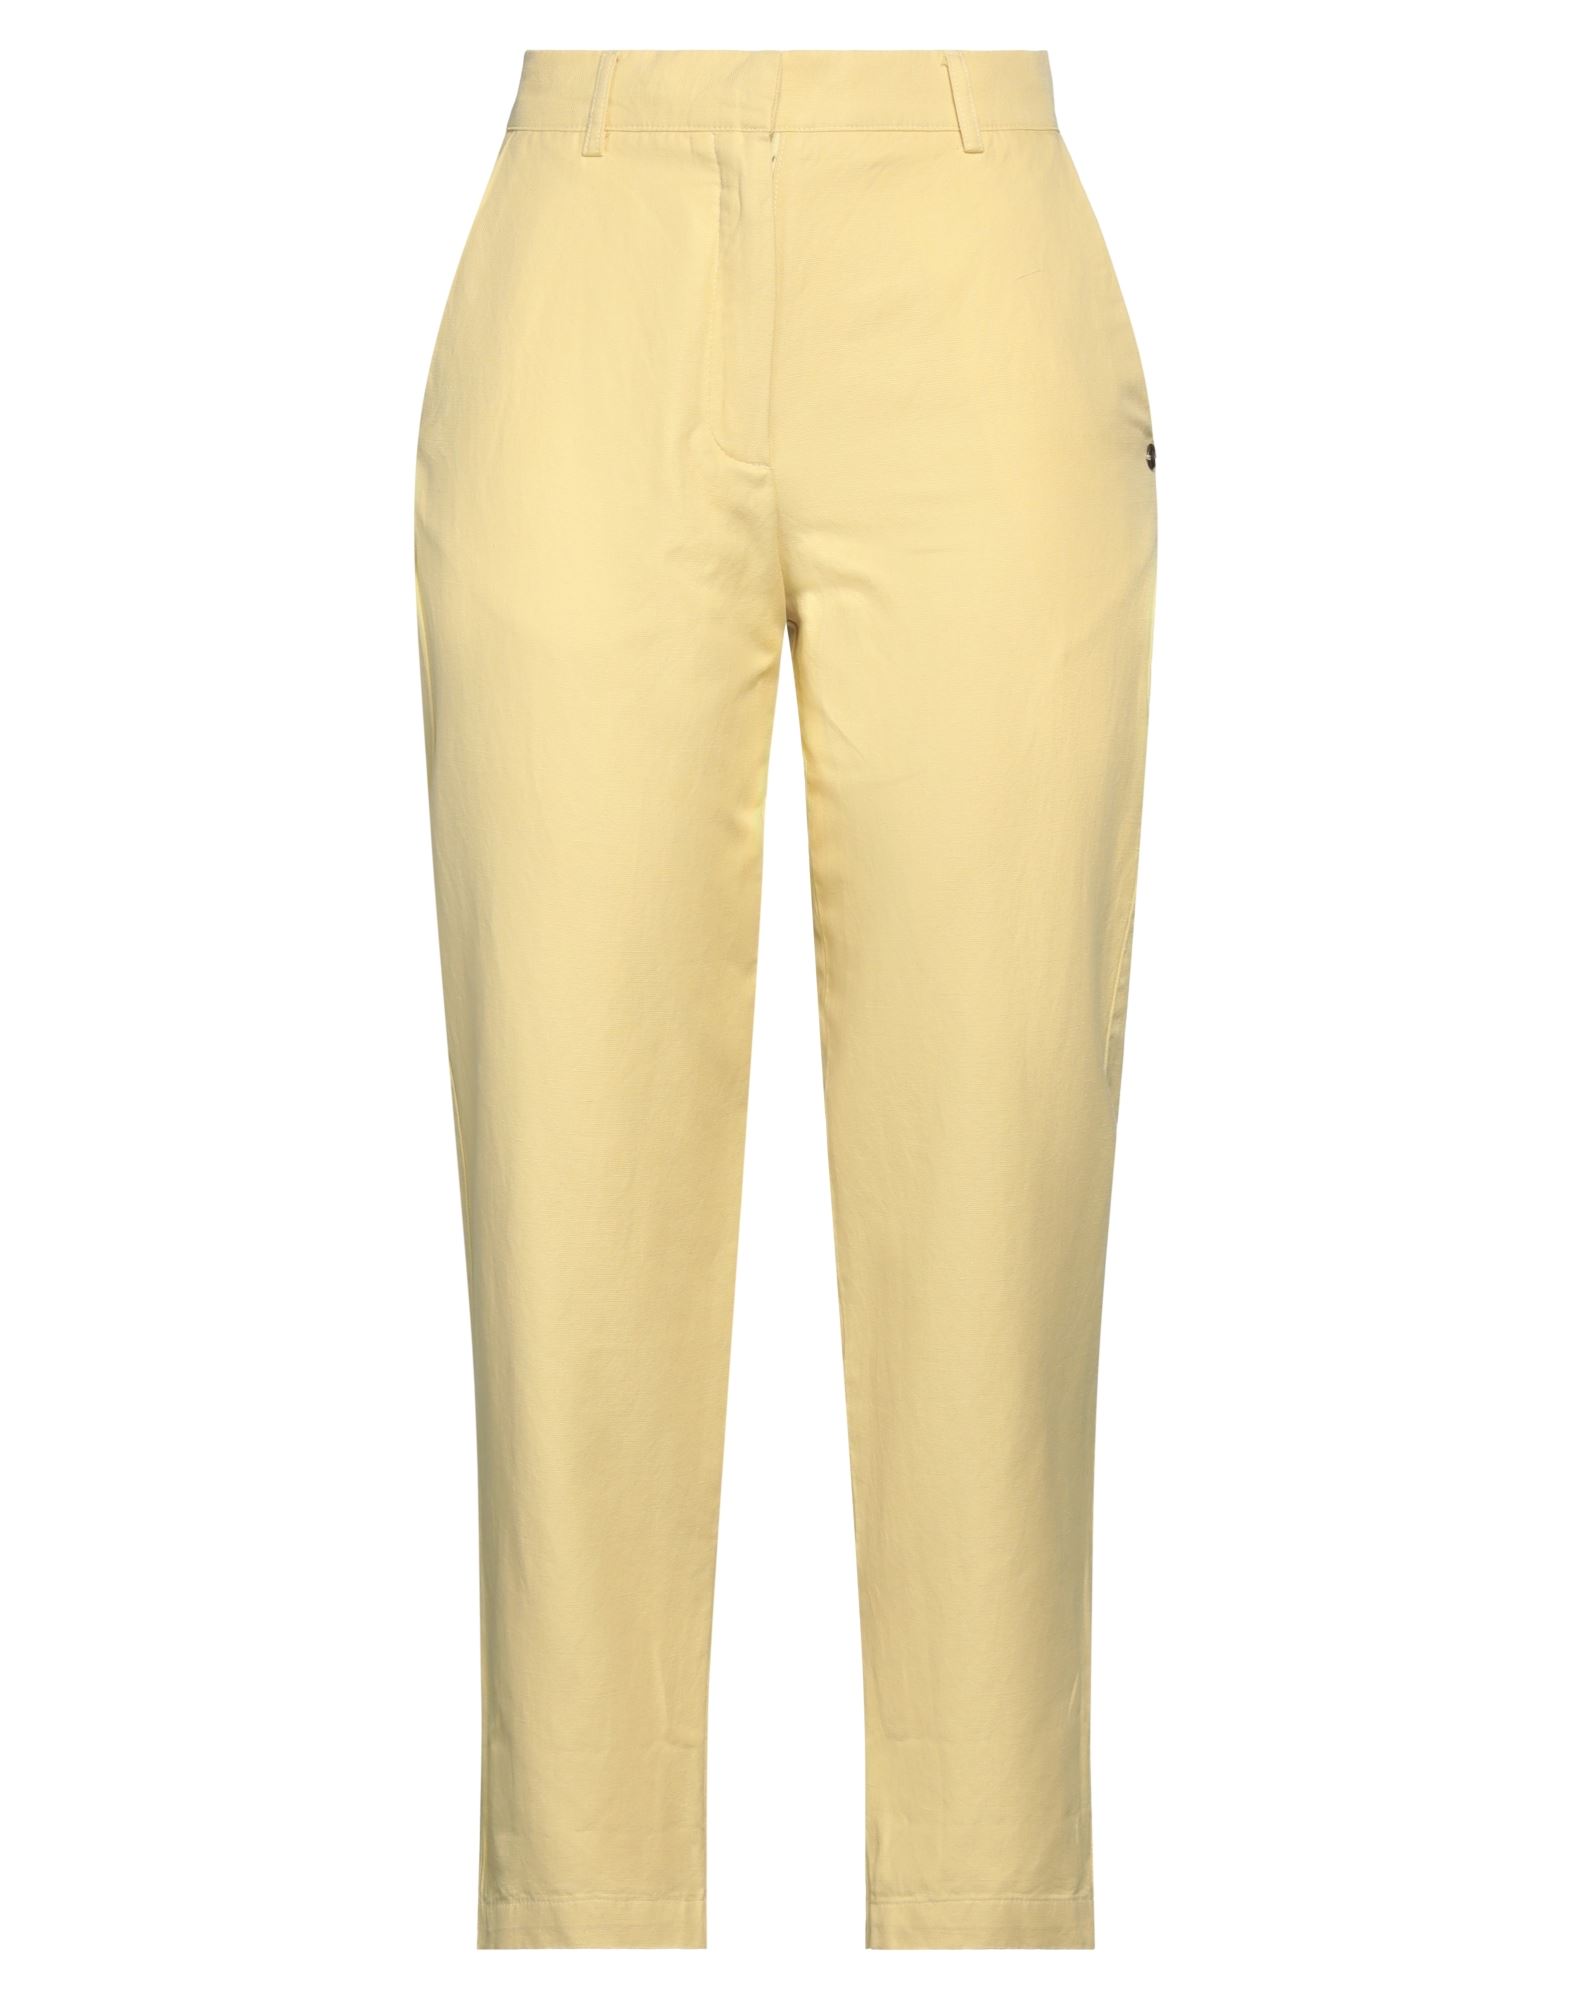 Ottod'ame Woman Pants Light Yellow Size 8 Cotton, Hemp